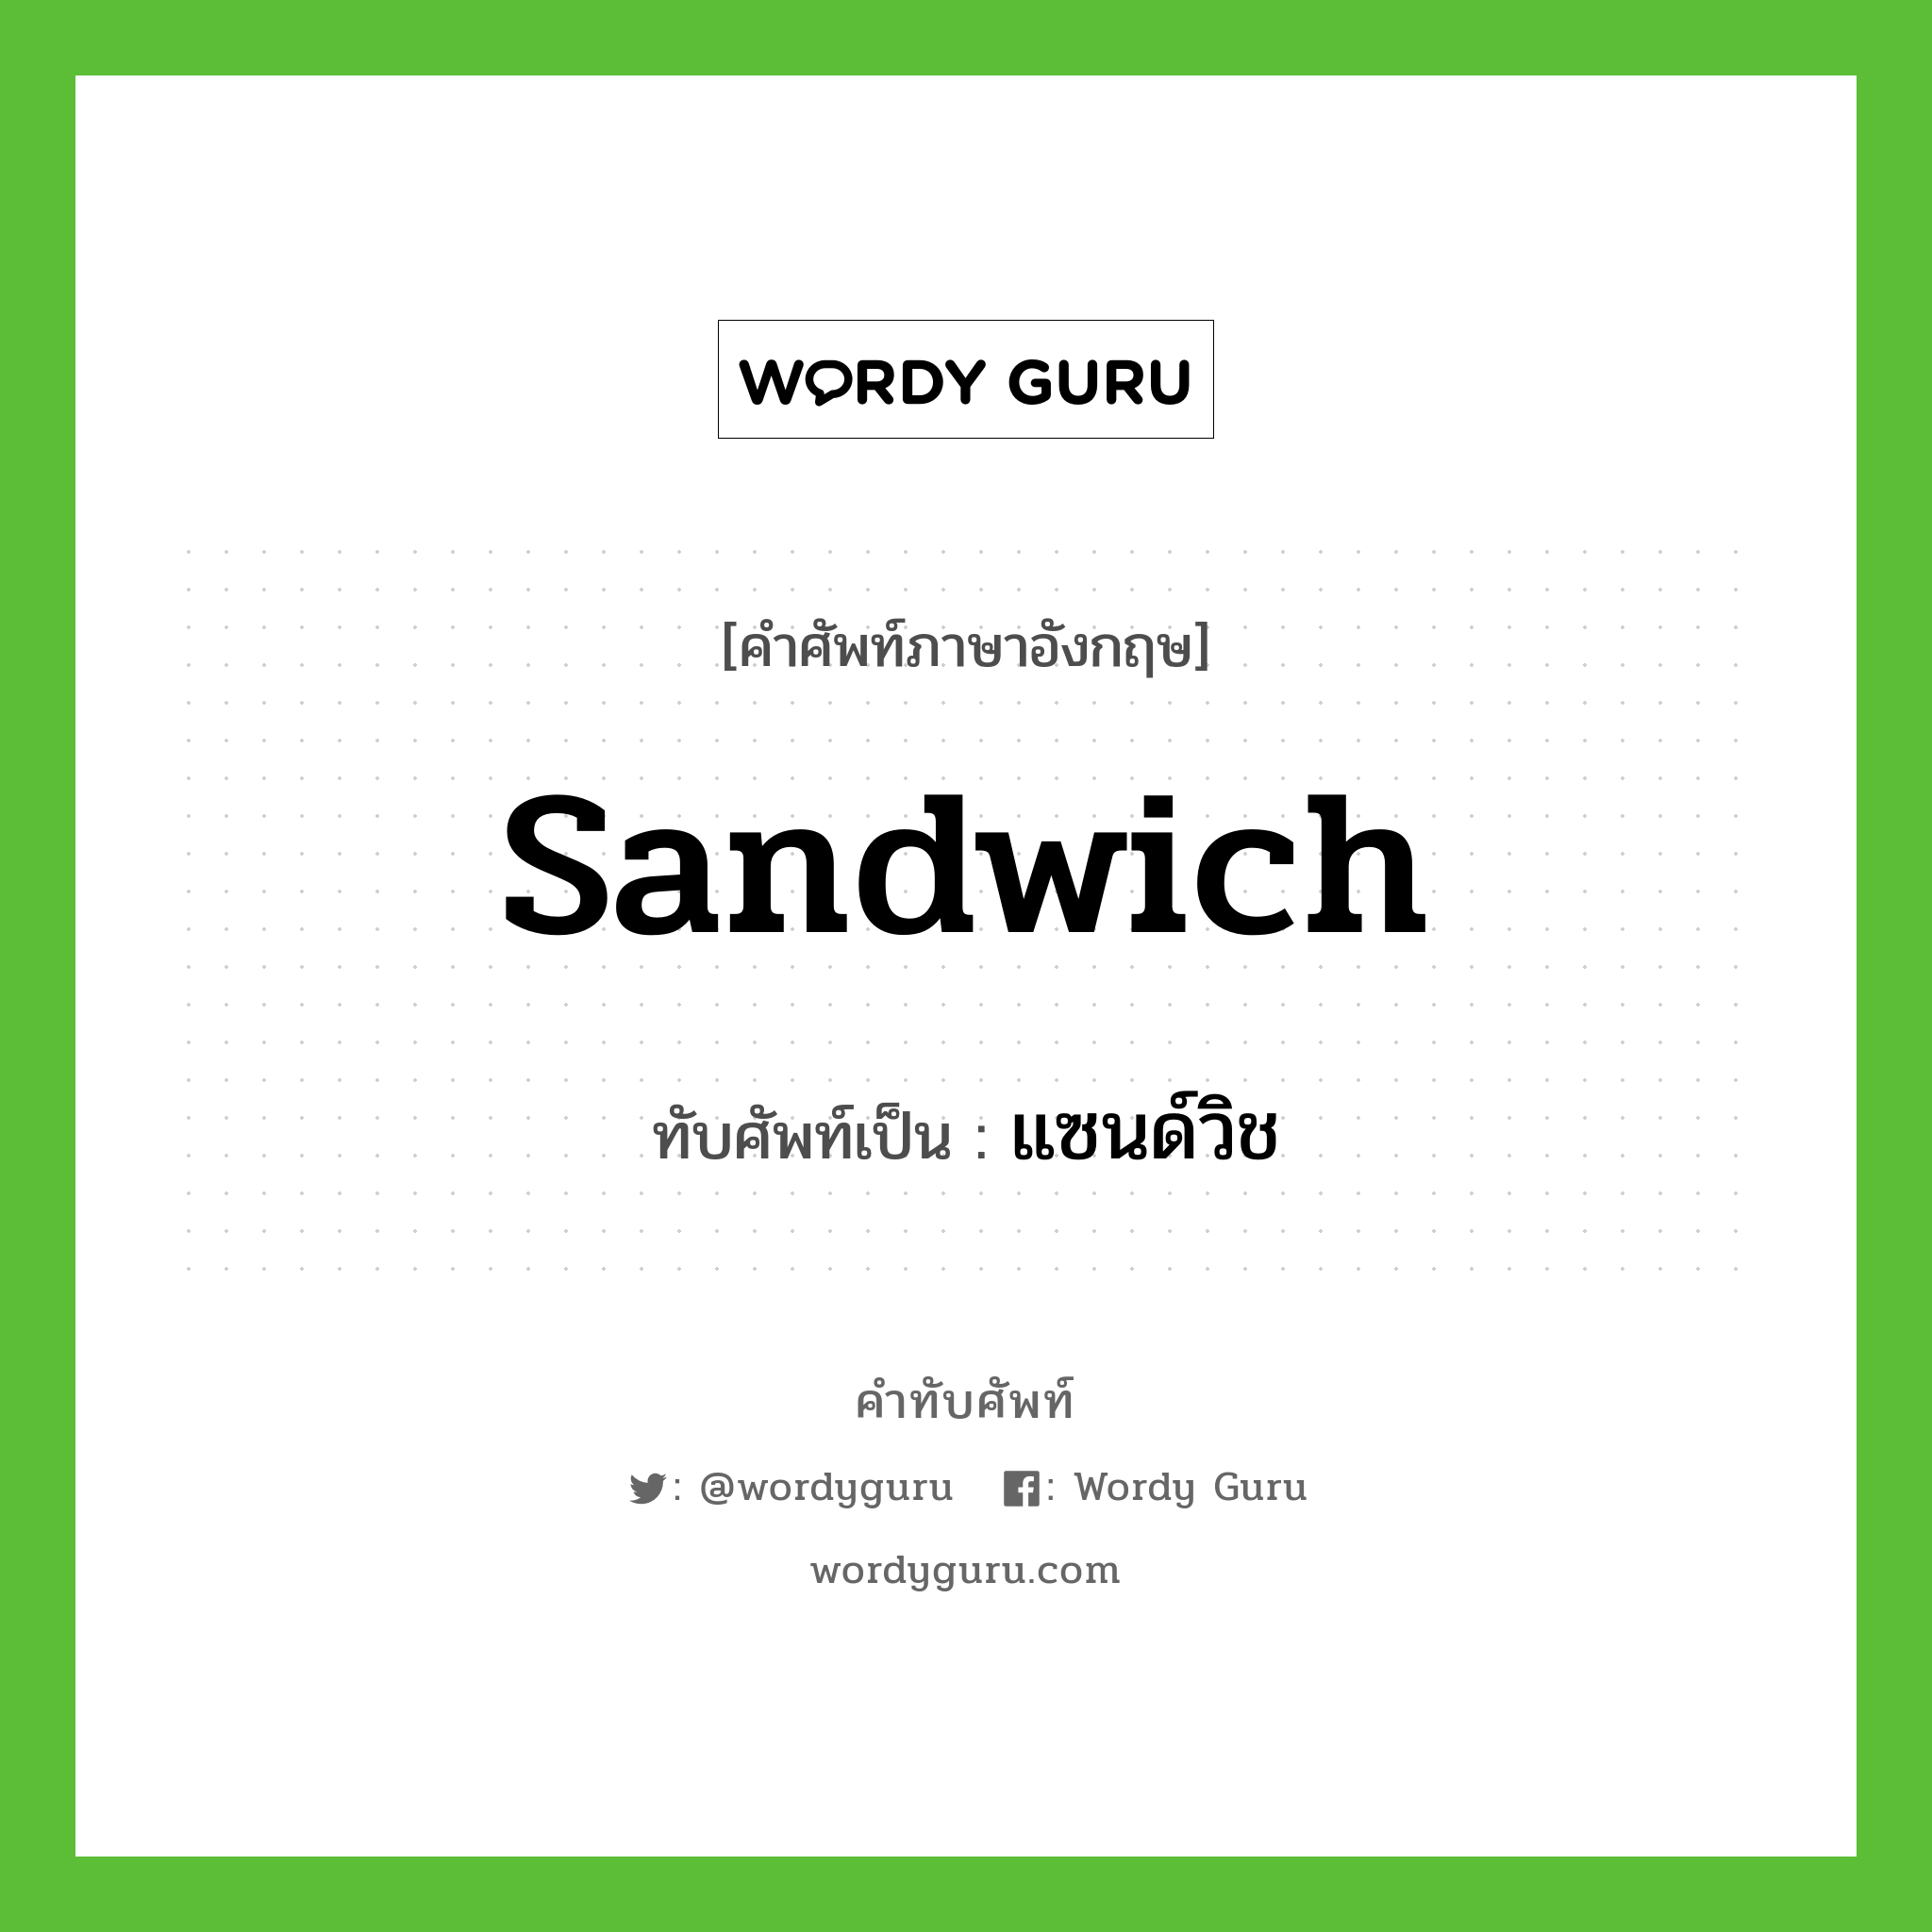 แซนด์วิช เขียนอย่างไร?, คำศัพท์ภาษาอังกฤษ แซนด์วิช ทับศัพท์เป็น sandwich